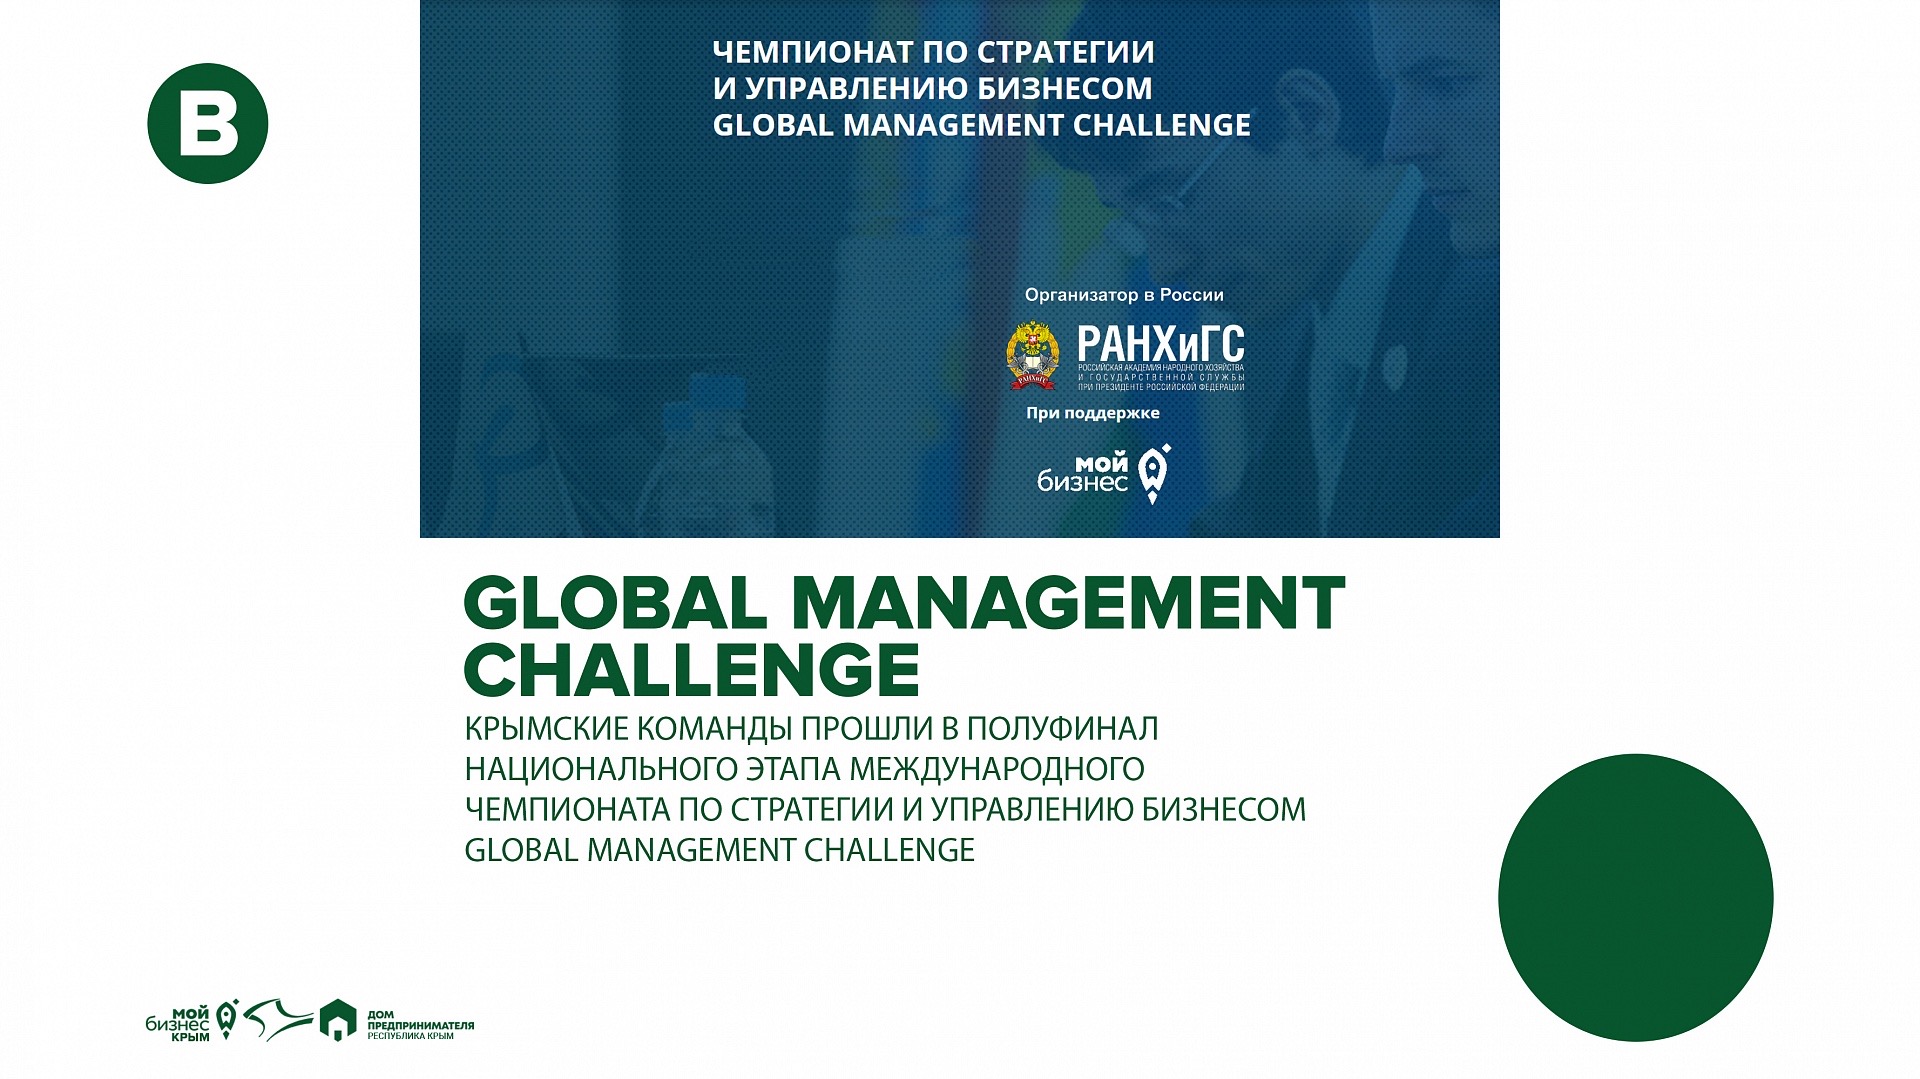 Крымские команды прошли в полуфинал национального этапа международного чемпионата по стратегии и управлению бизнесом Global Management Challenge